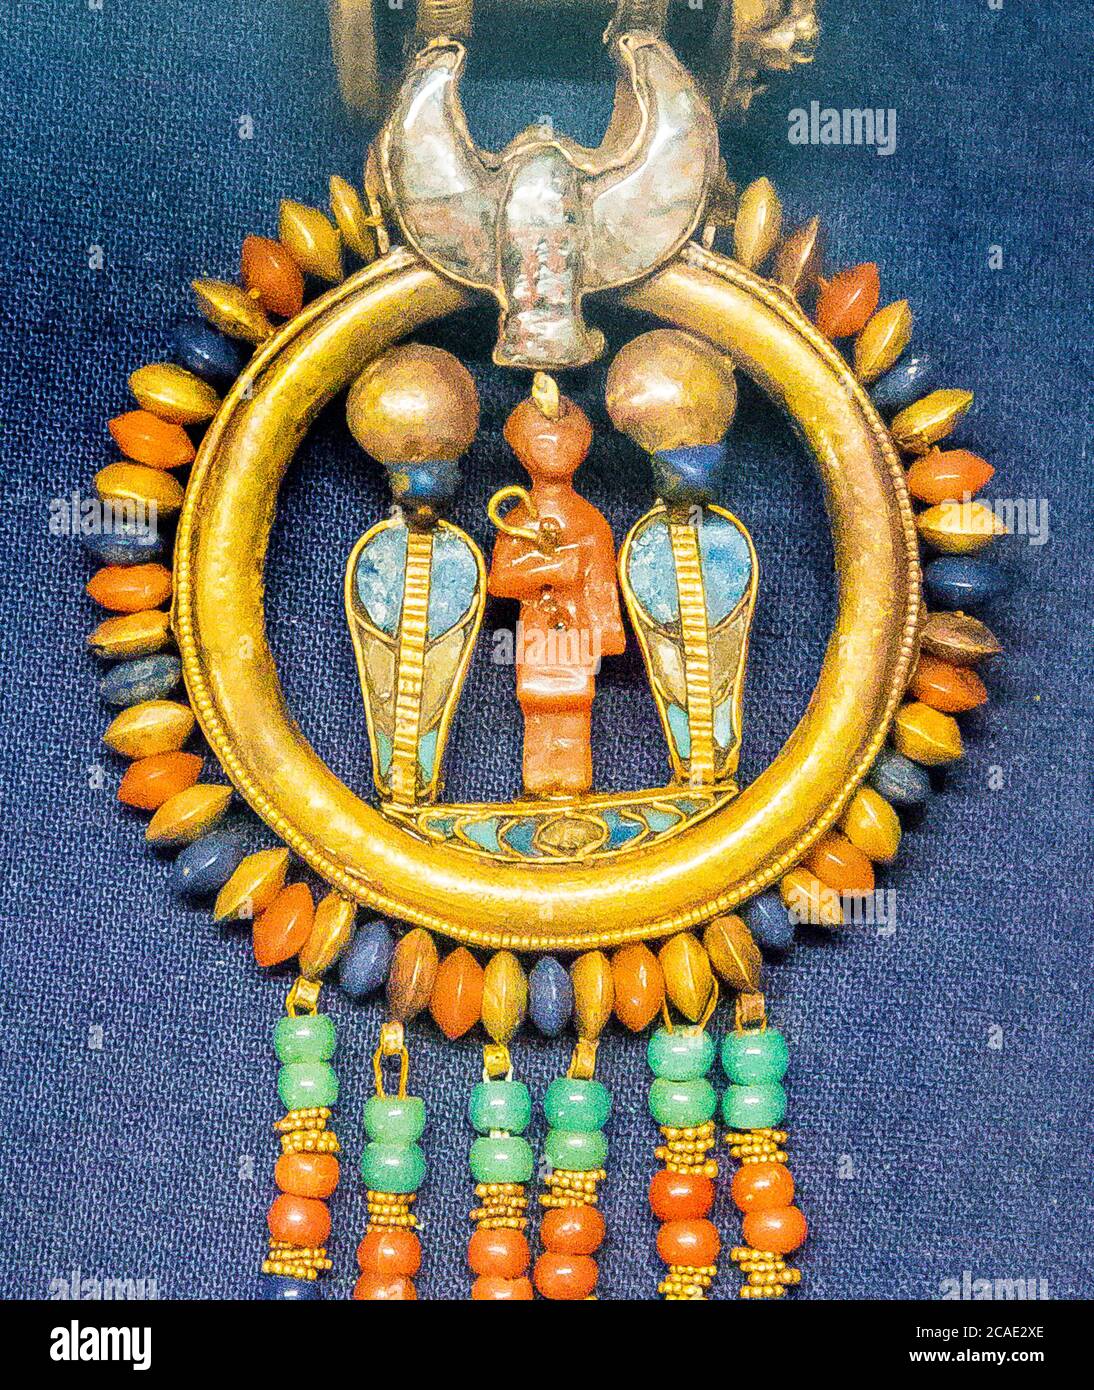 Egypte, Caire, bijoux Toutankhamon, de sa tombe à Louxor : boucle d'oreille montrant le roi et 2 serpents solaires, sous un faucon volant. Banque D'Images